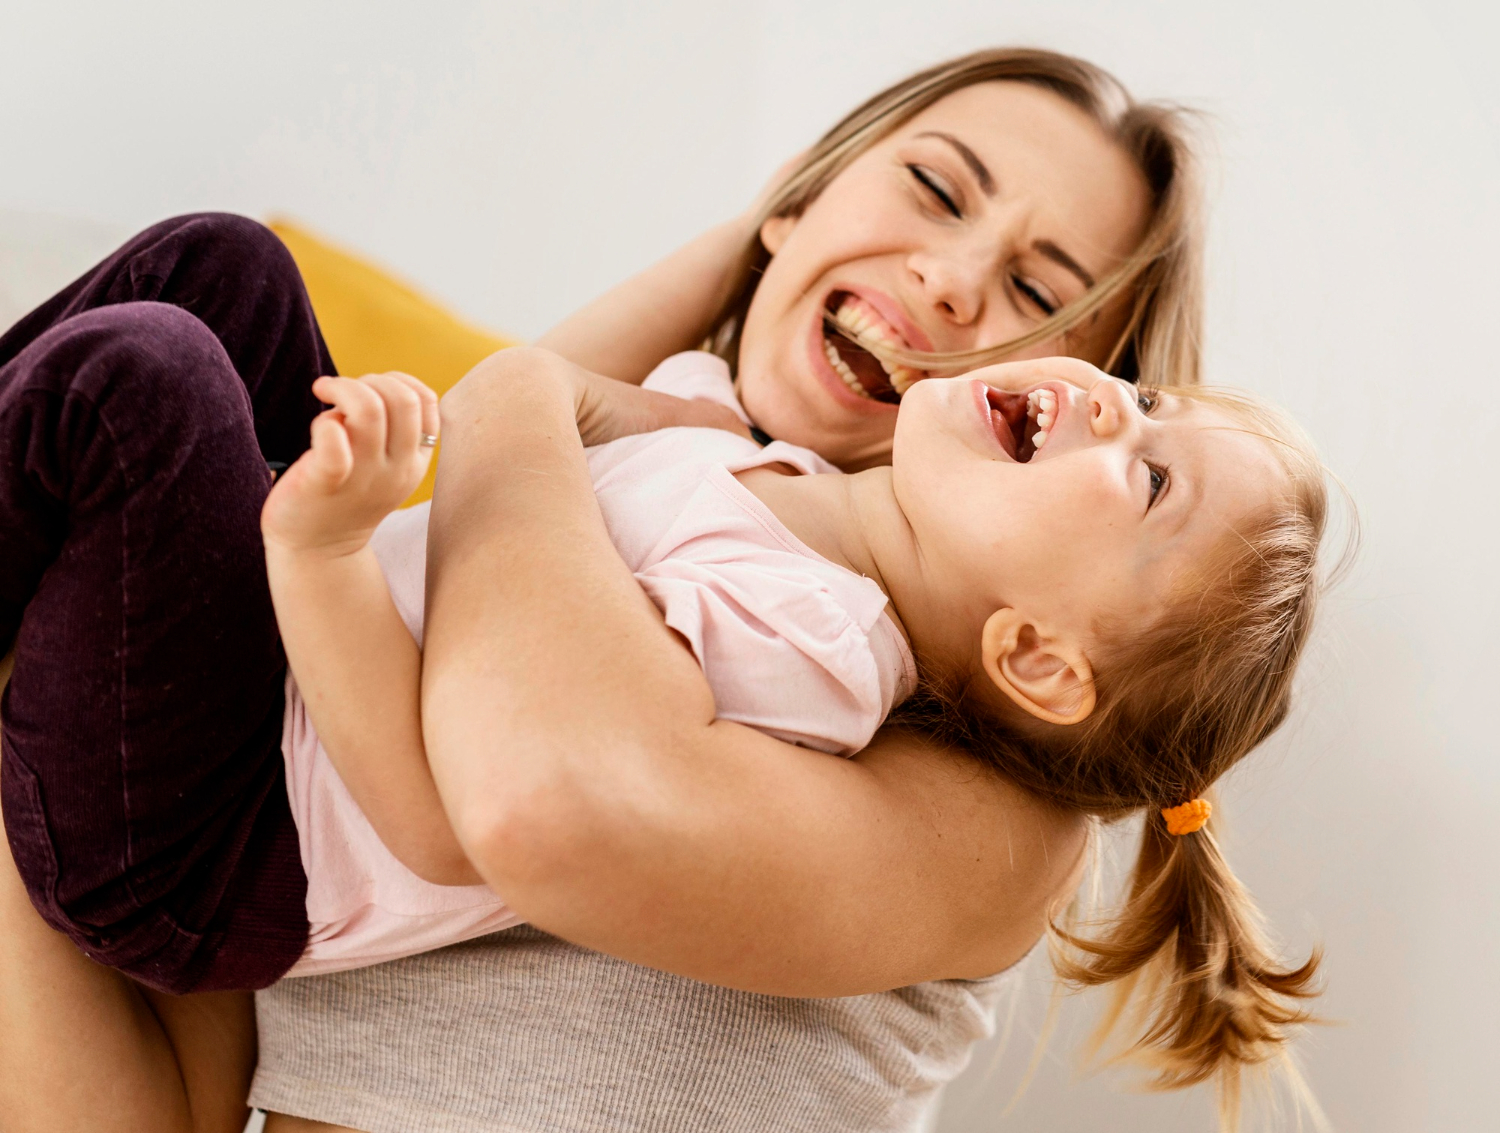 Autocuidado na maternidade: 5 dicas para equilibrar a rotina e priorizar o seu bem-estar enquanto mãe e mulher